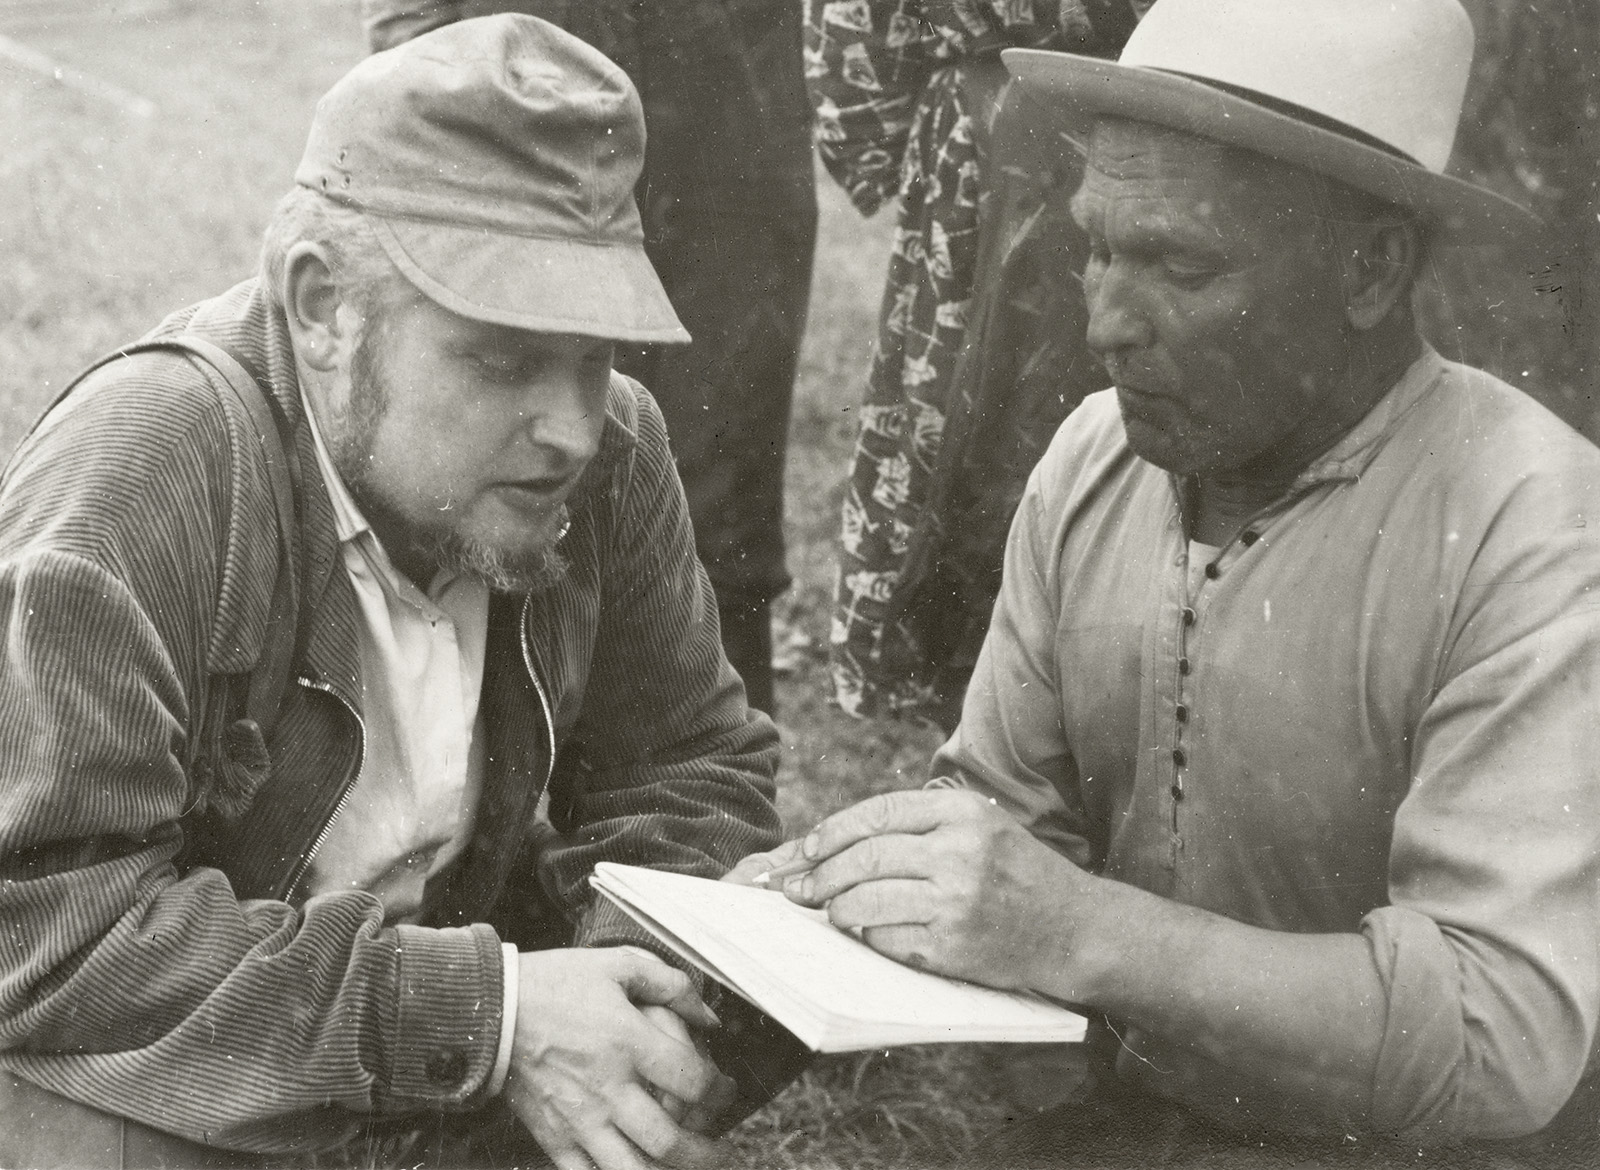 Aleksei Peterson ja Timofei Smirnov arutavad vepsa skerdi (viljarõugu) joonist. ERM Fk 1580:4. Foto: Toivo Pedak 1967